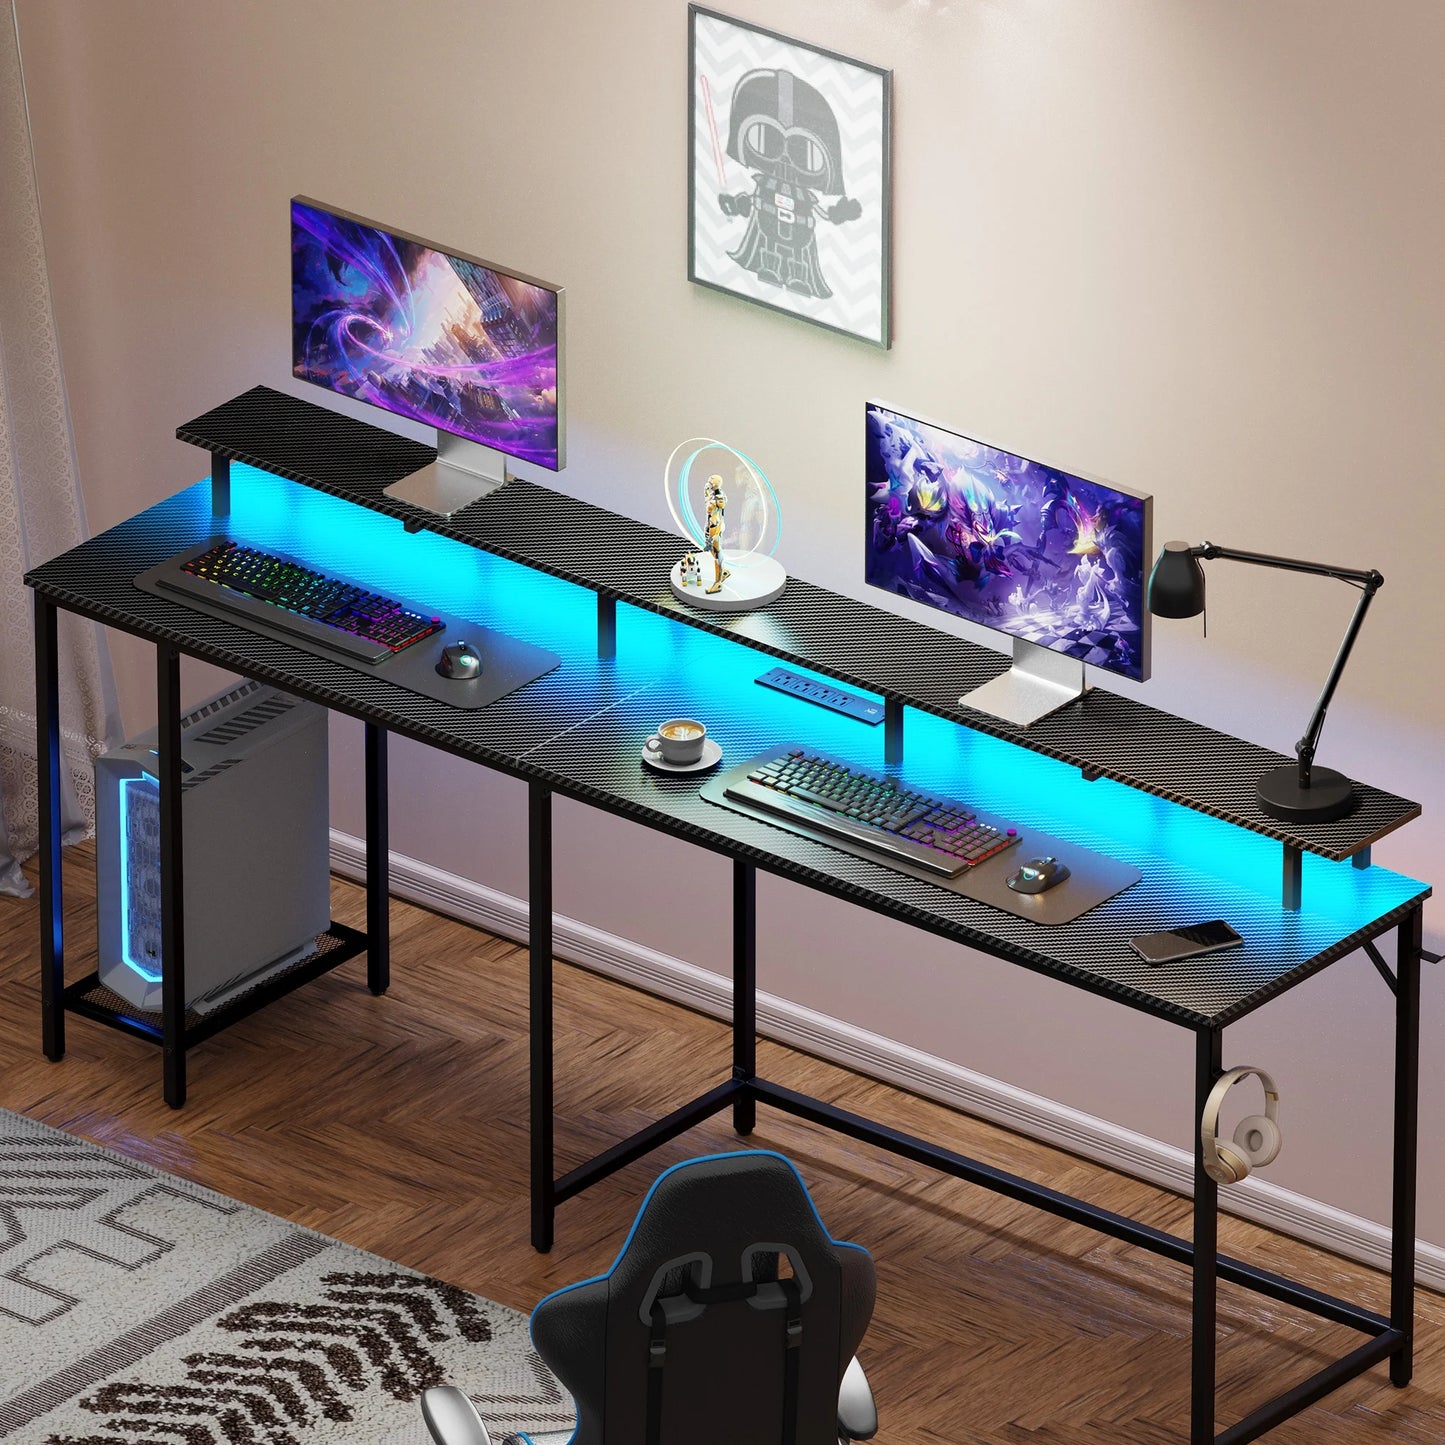 L Shaped Desk with Outlets & USB Ports, Gaming Desk with LED Light Strip, Corner Computer Desk, L Office Desk, Monitor Stand, Hooks, and Storage Shelves, Carbon Fiber Black